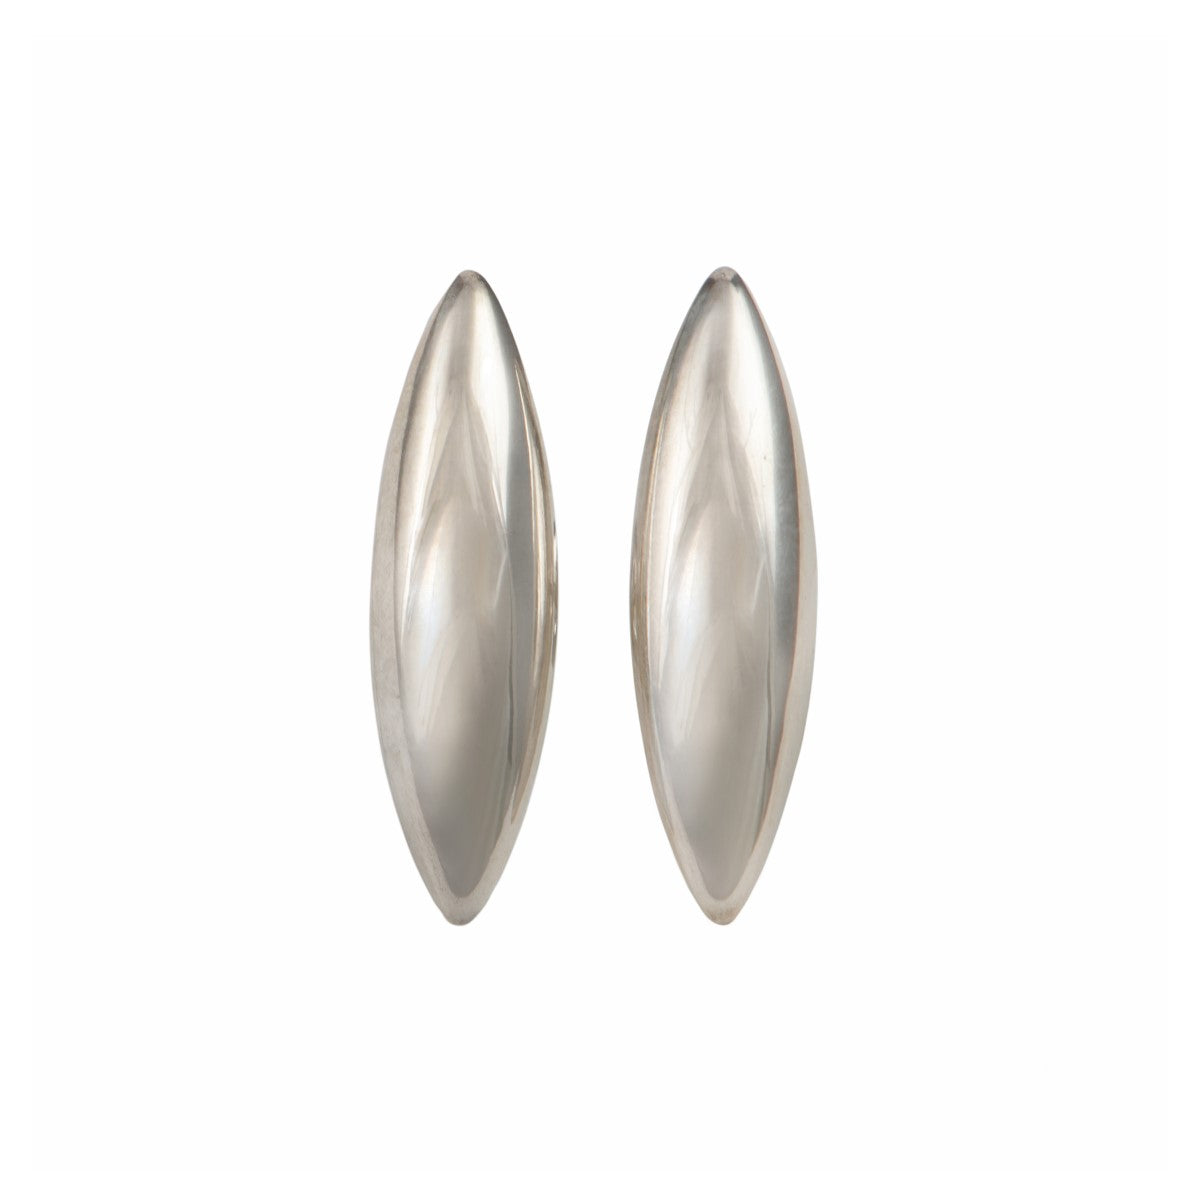 Sterling Silver Stud Earrings shaped like a Rice Grain